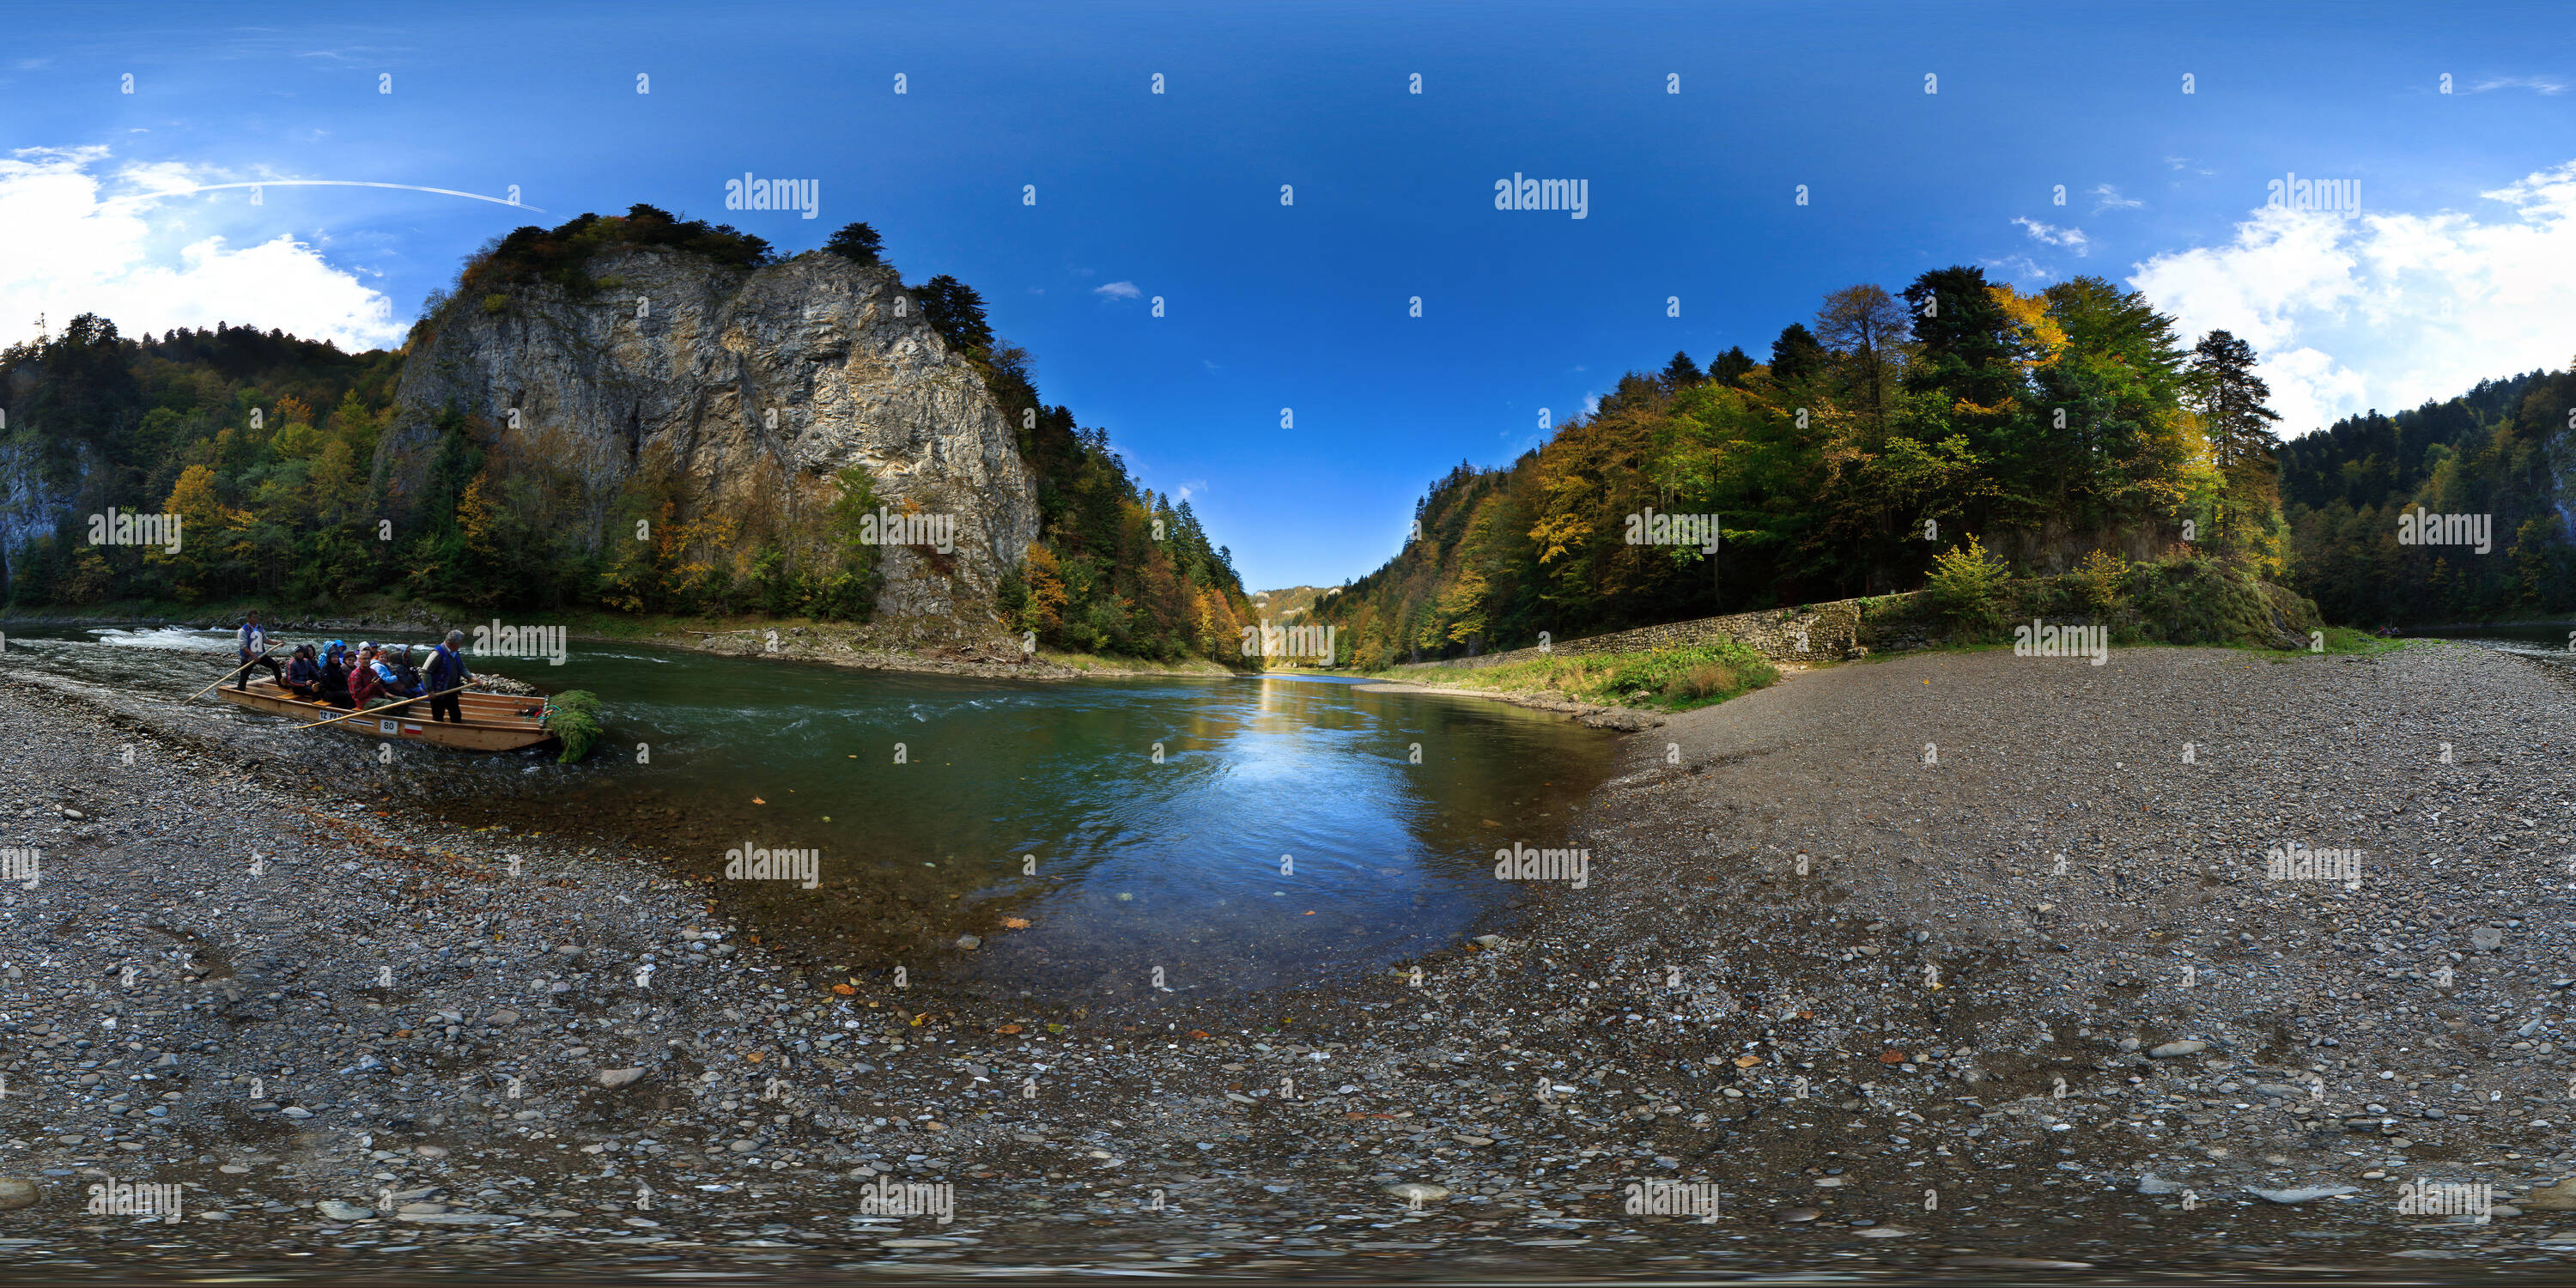 360 degree panoramic view of 360 degree virtual tour of Dunajec River Gorge. The Pieniny Mountains. Poland/Slovakia border.